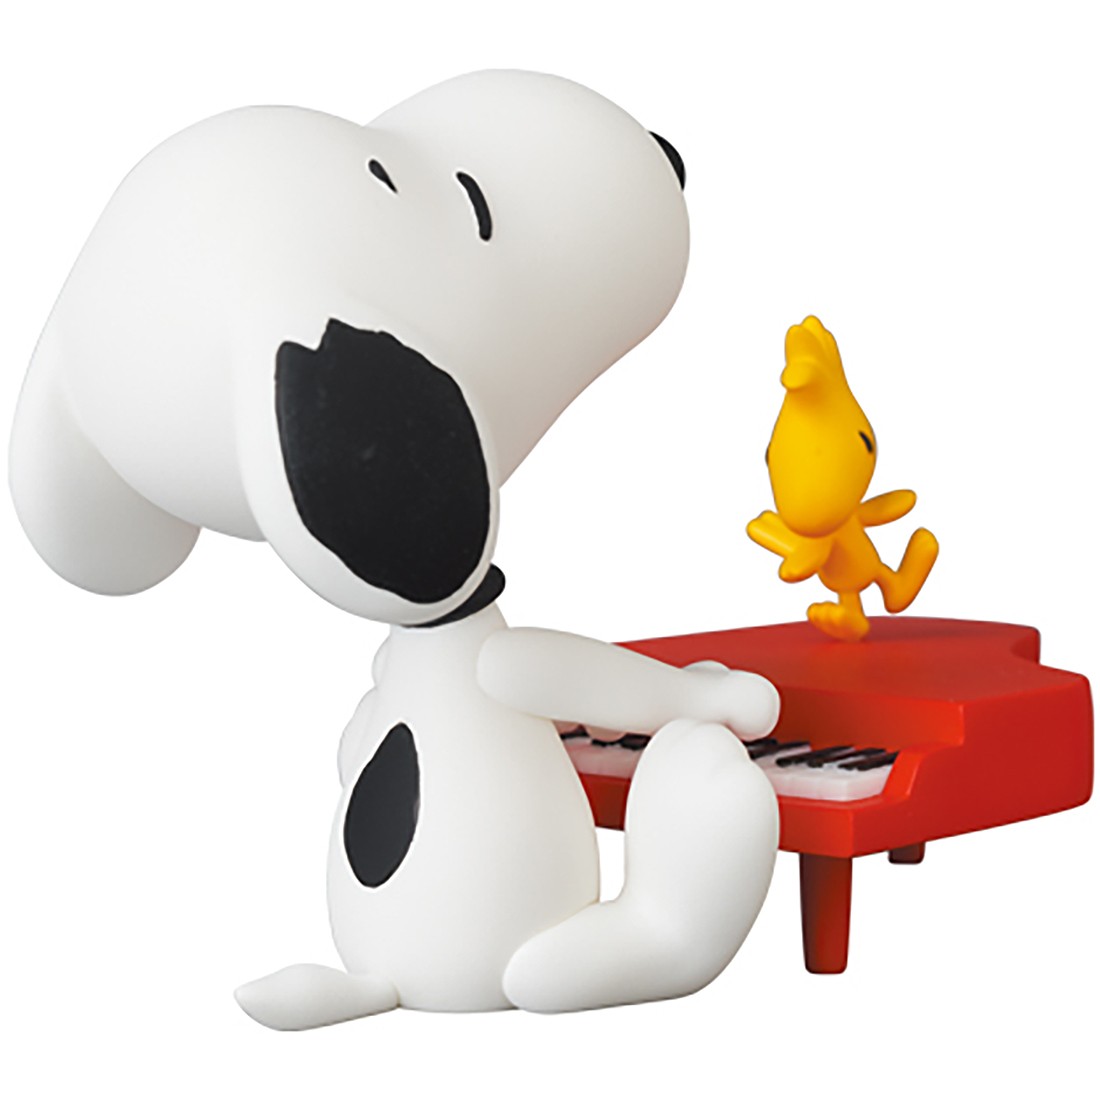 Medicom UDF Peanuts Series 13 Pianist Snoopy Figure red